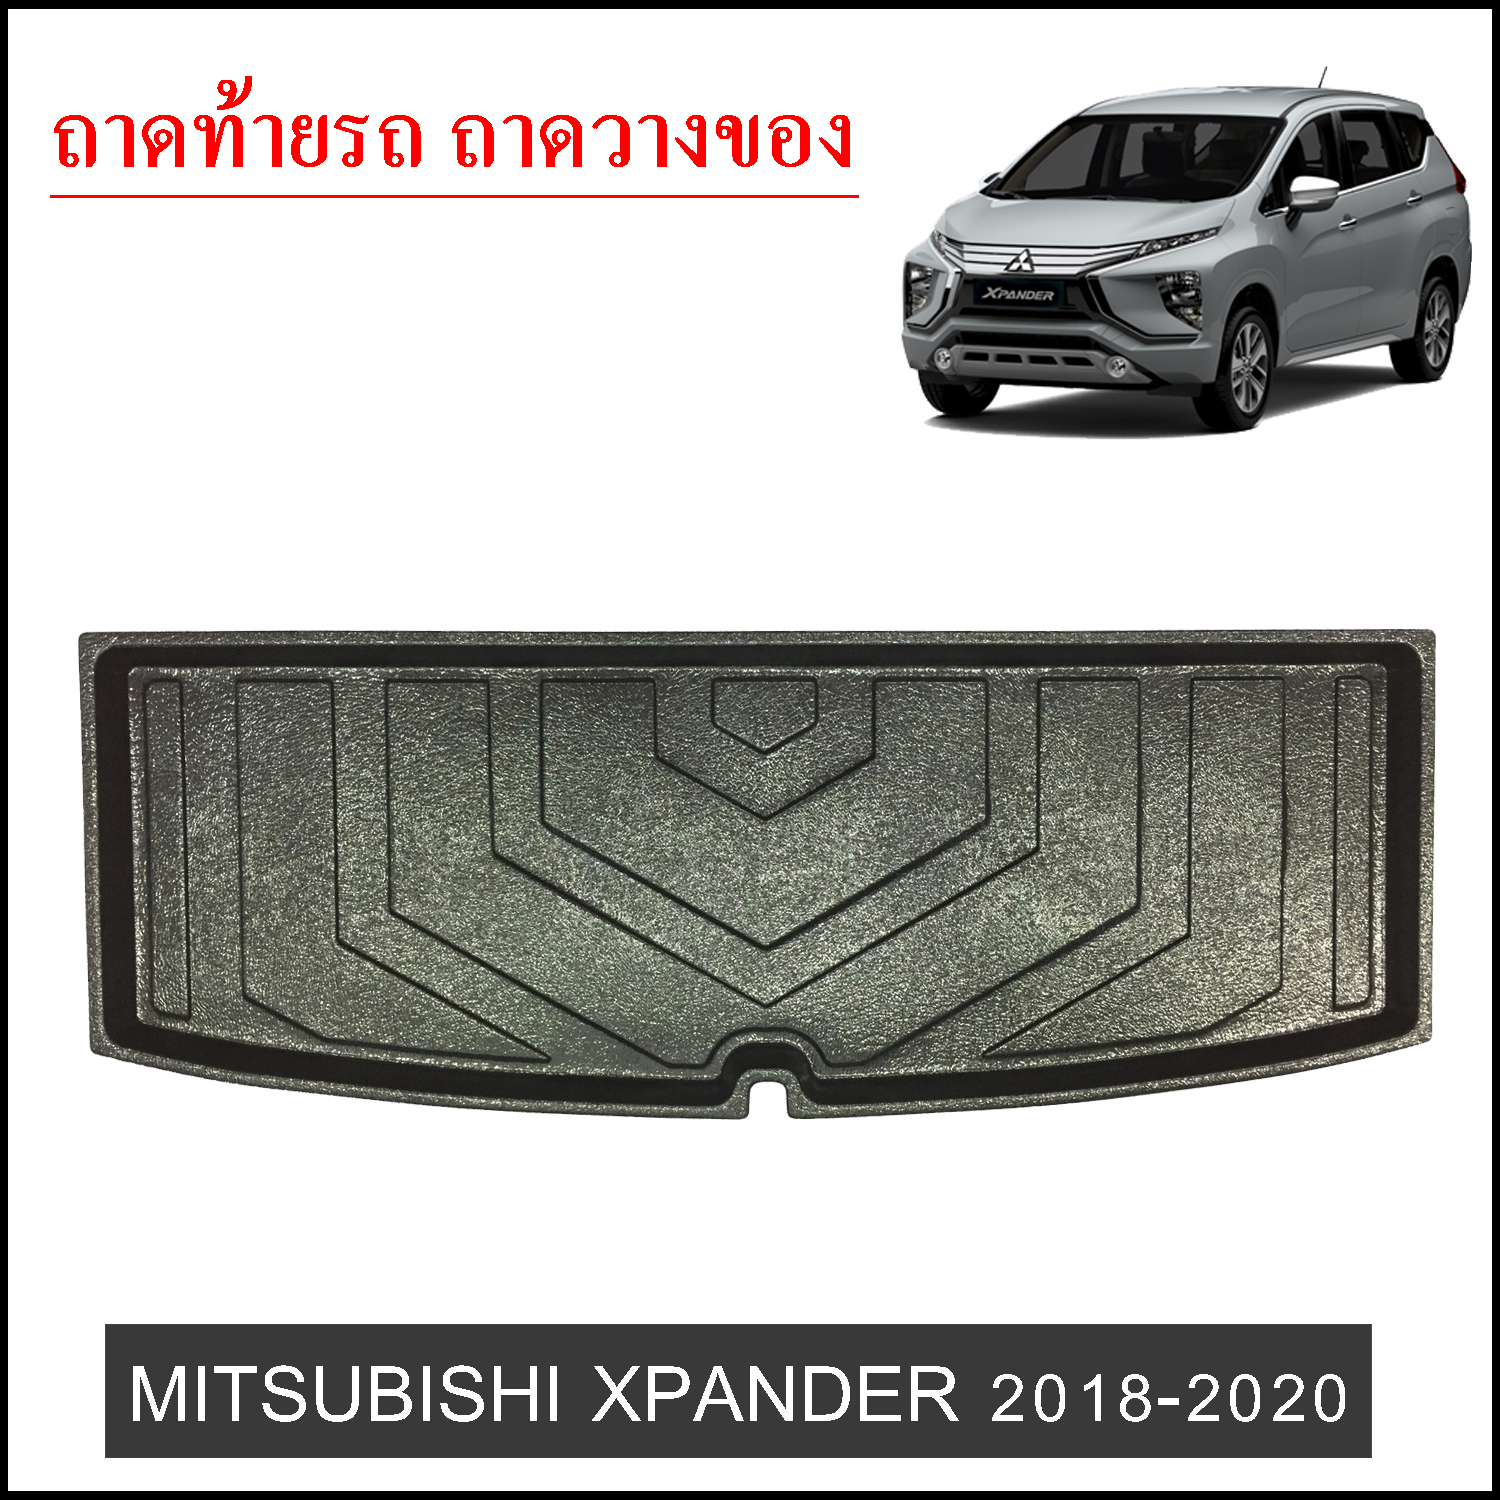 ถาดท้ายวางของ Mitsubishi Xpander